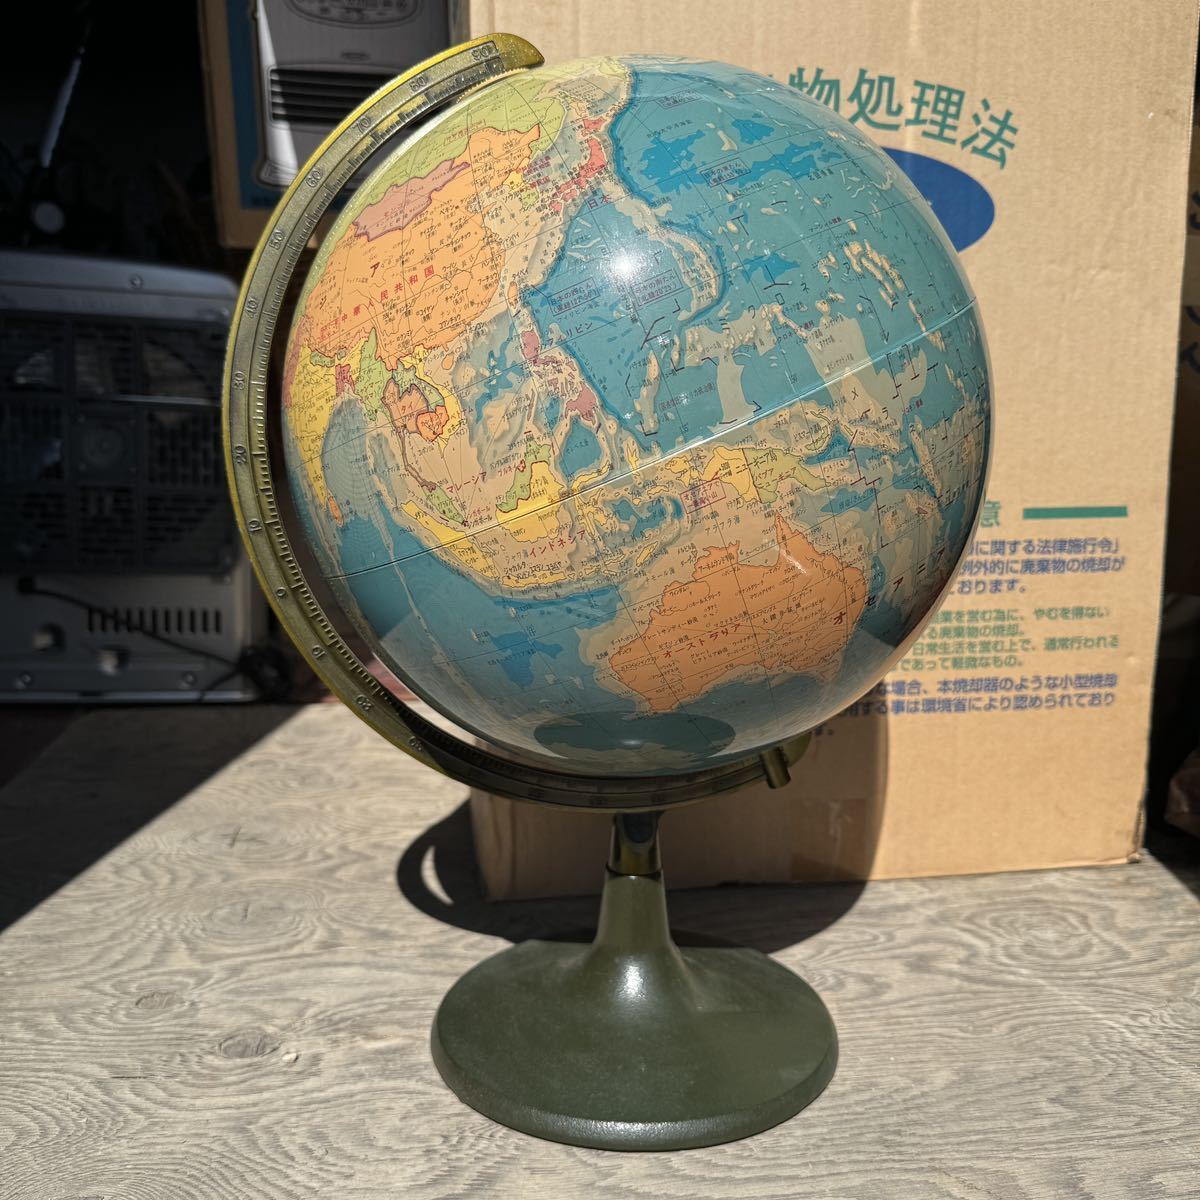 ... лампа  ...  антиквариат   мир  карта   Сёва  ретро   высота   около  45cm ×  около  30cm   Ямагата   с помощью 